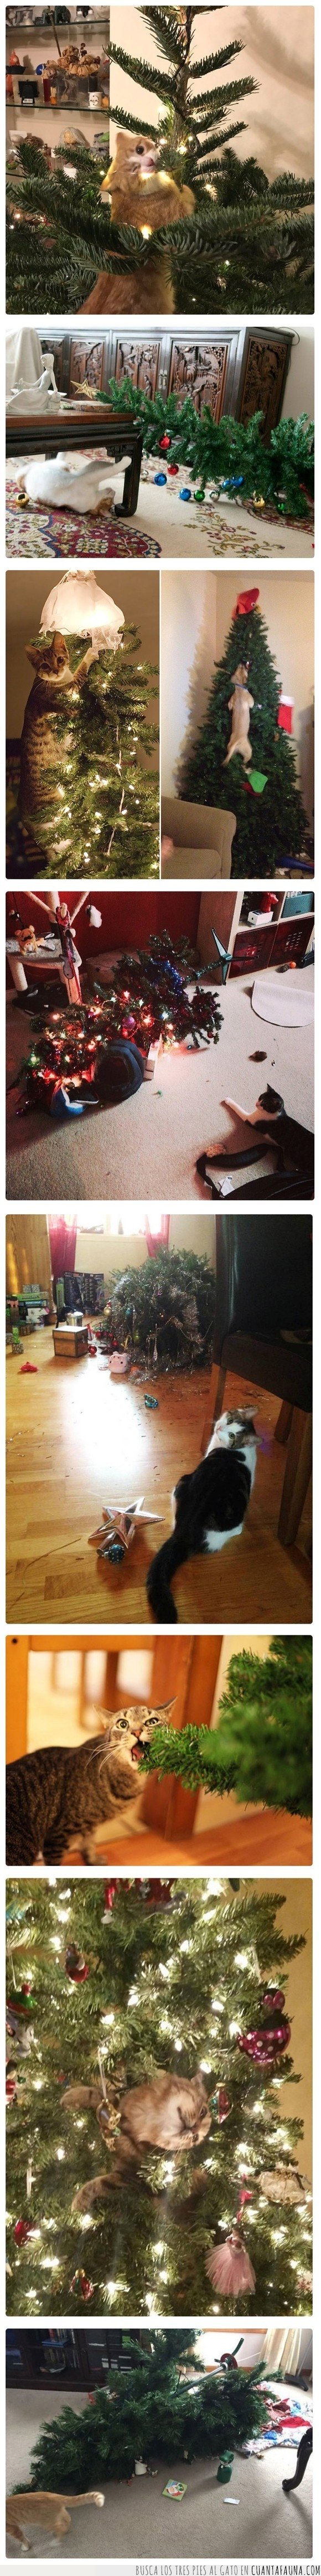 árboles de navidad,gatos,navidad